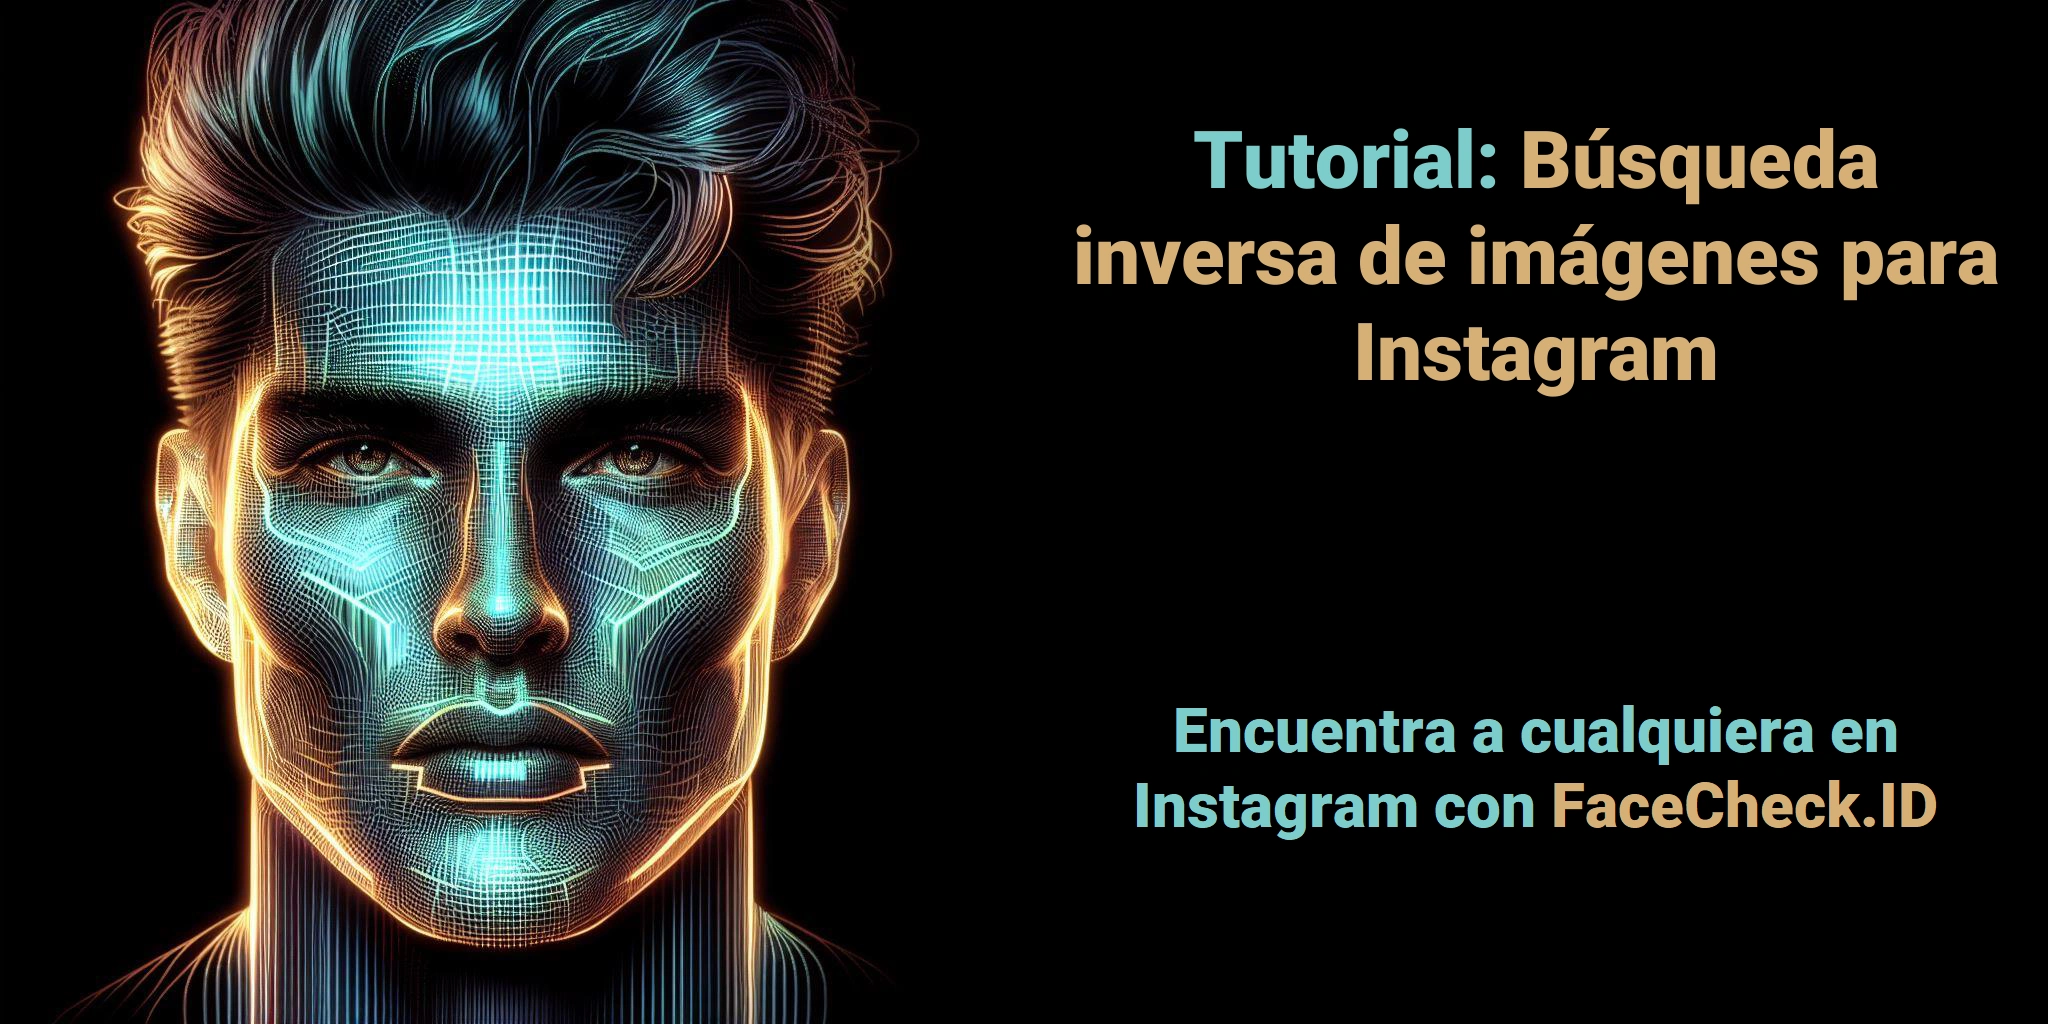 Tutorial: Búsqueda inversa de imágenes para Instagram Encuentra a cualquiera en Instagram con FaceCheck.ID